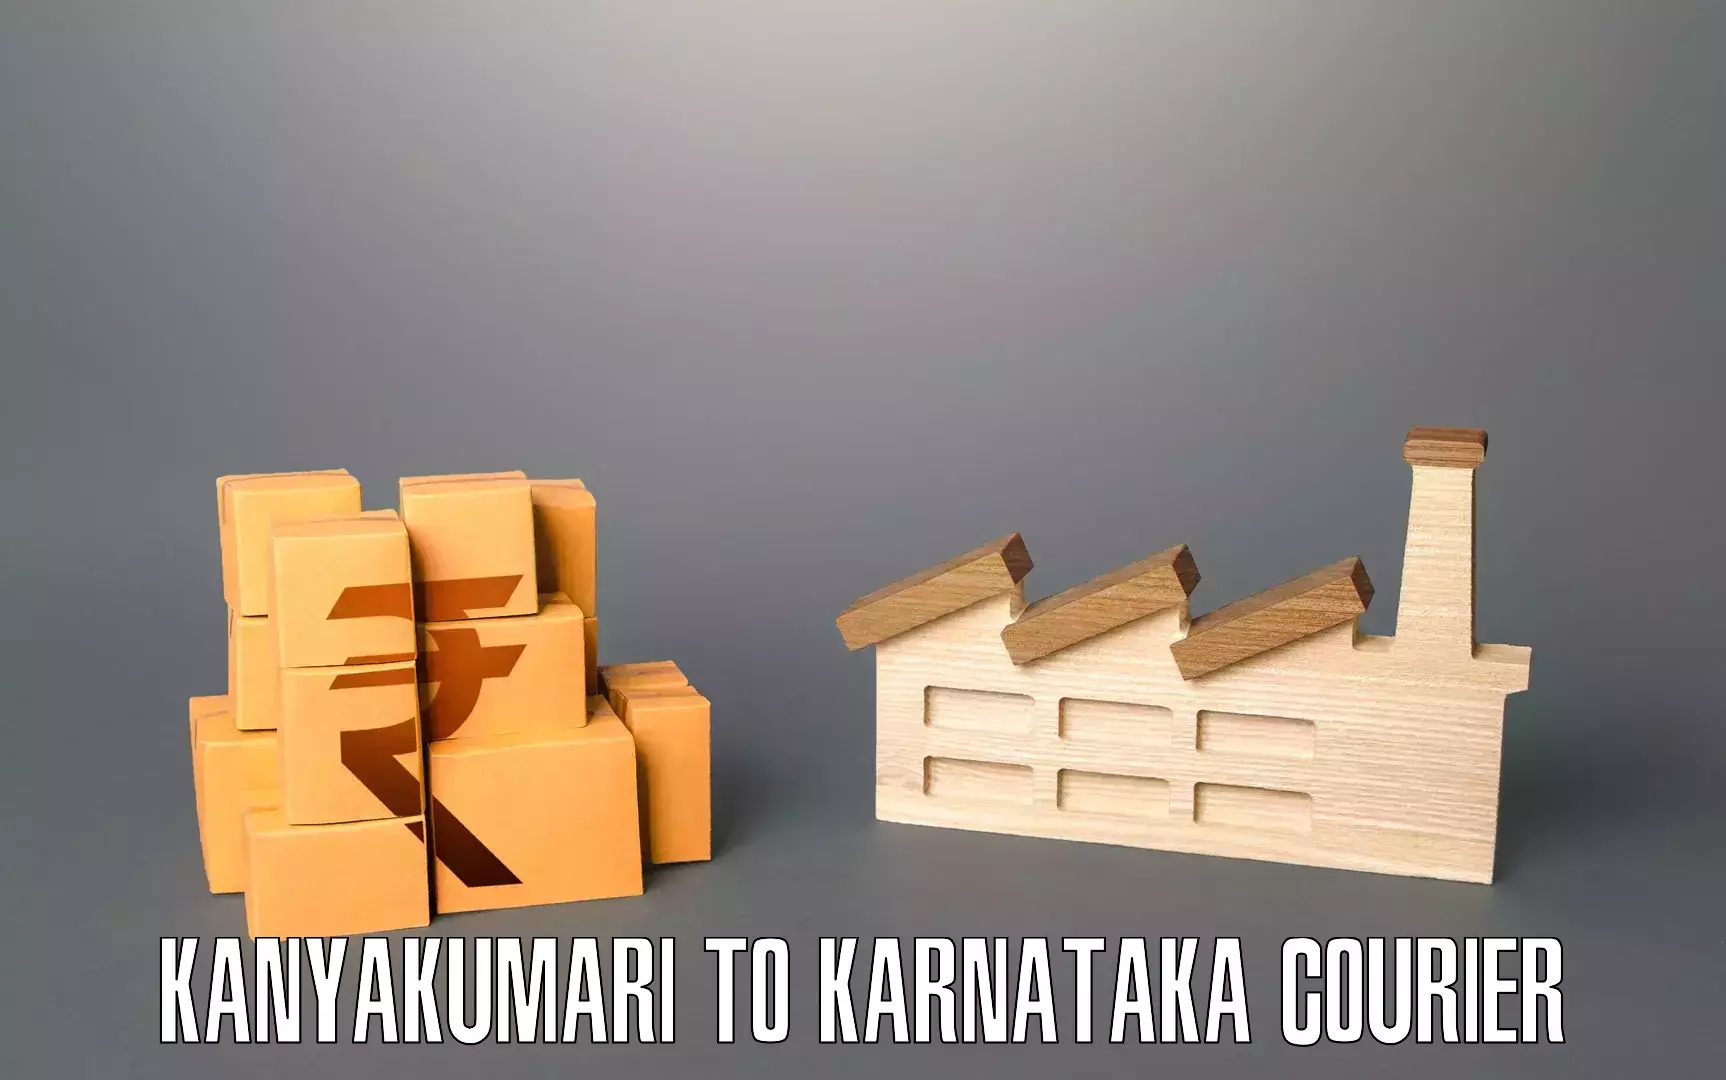 Professional movers and packers Kanyakumari to Karnataka